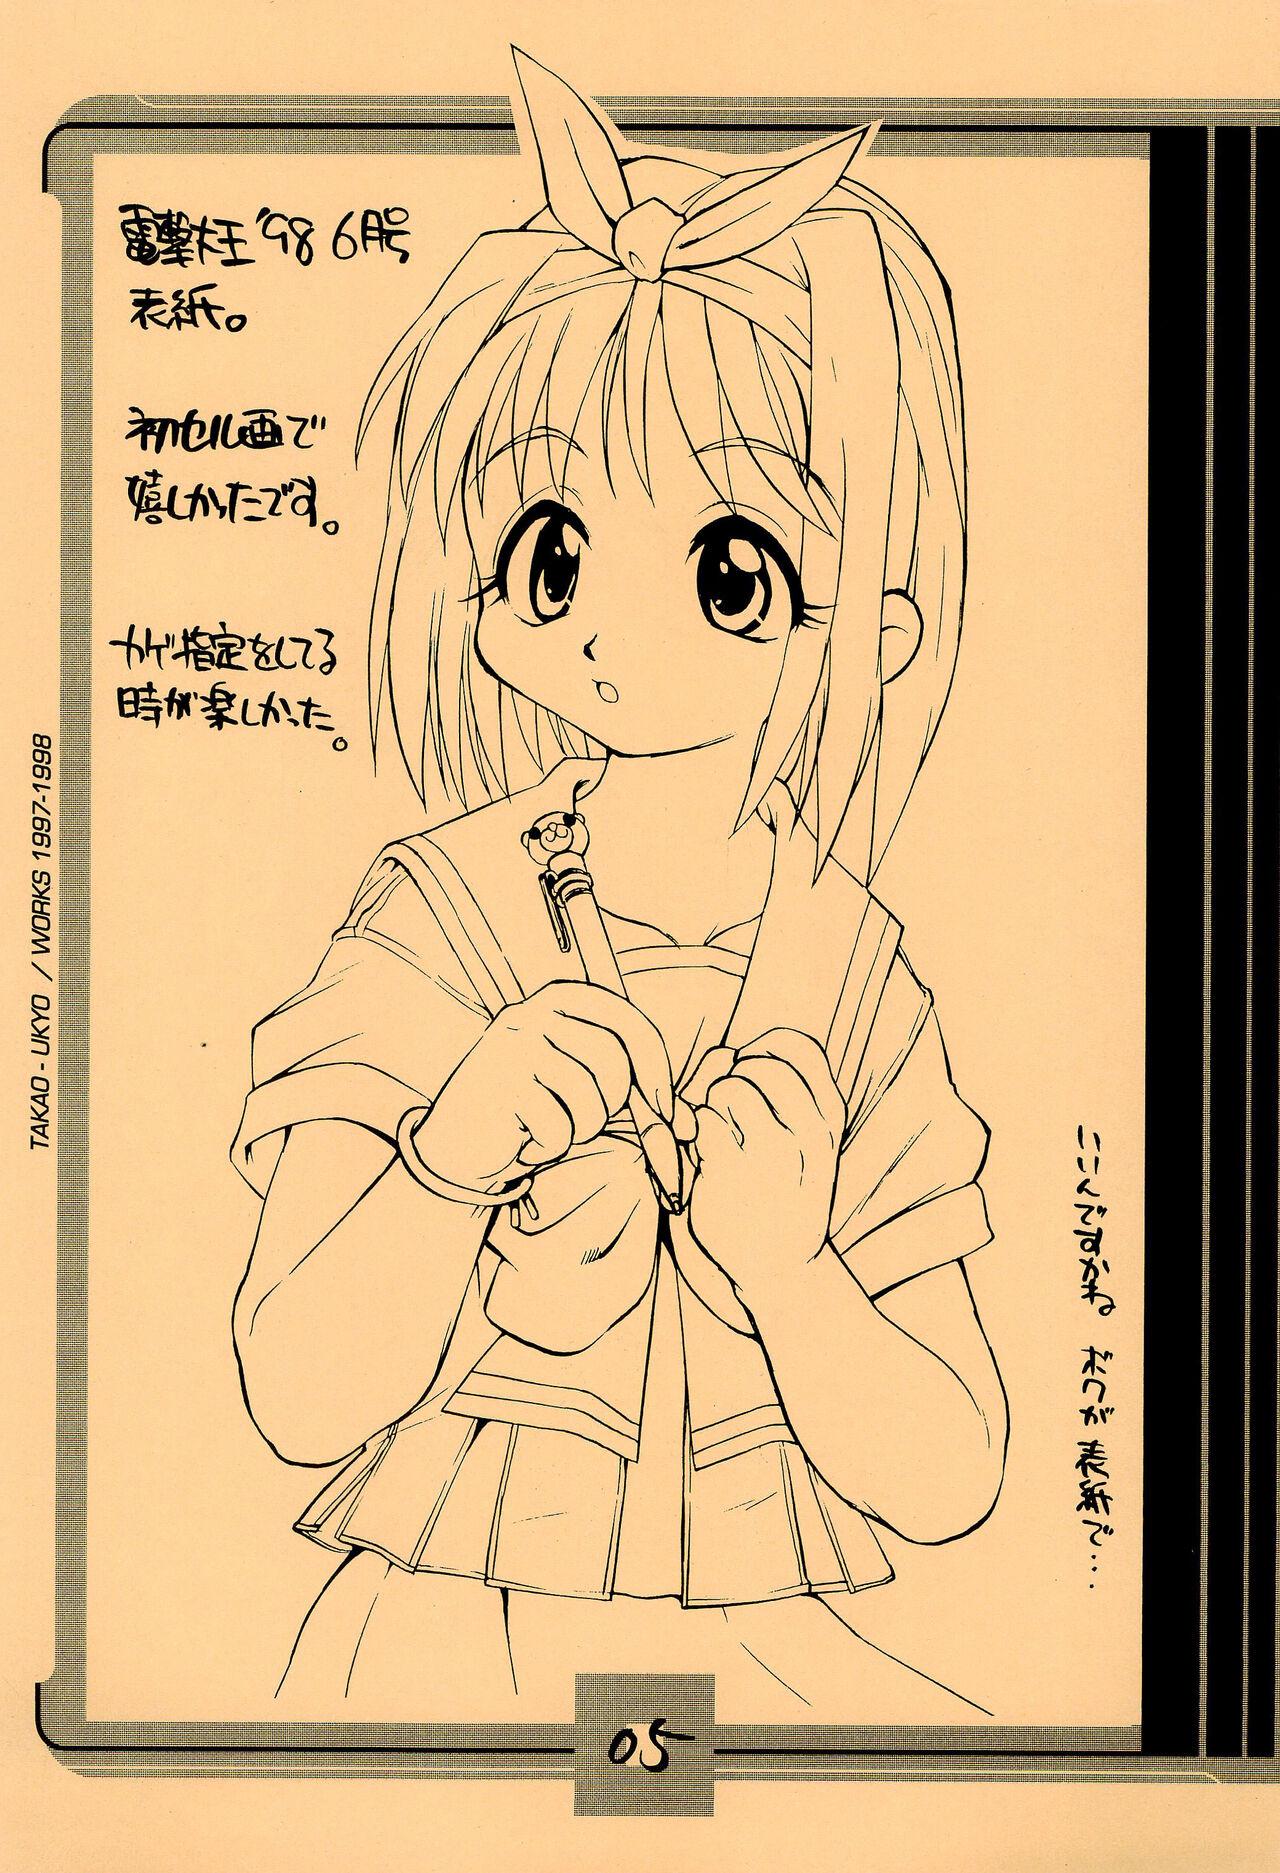 Wife Mamagult Katsudou Houkokusho Hikae 1997/11-1998/08 - To heart Fun fun pharmacy 10 carat torte Calcinha - Page 5